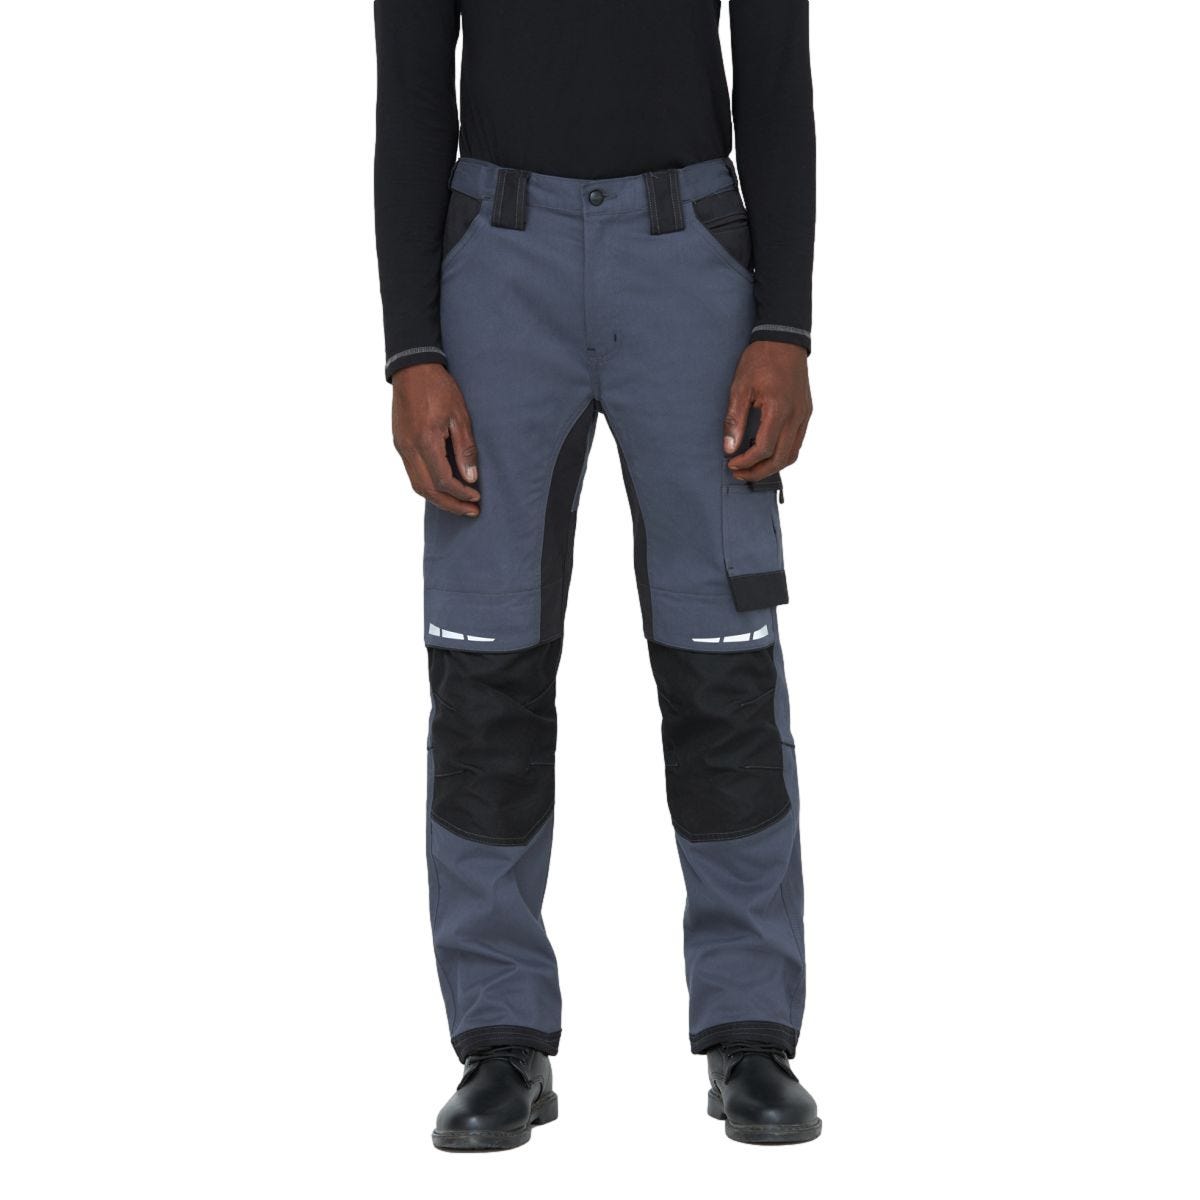 Pantalon de travail GDT Premium gris/noir - Dickies - Taille 40 2